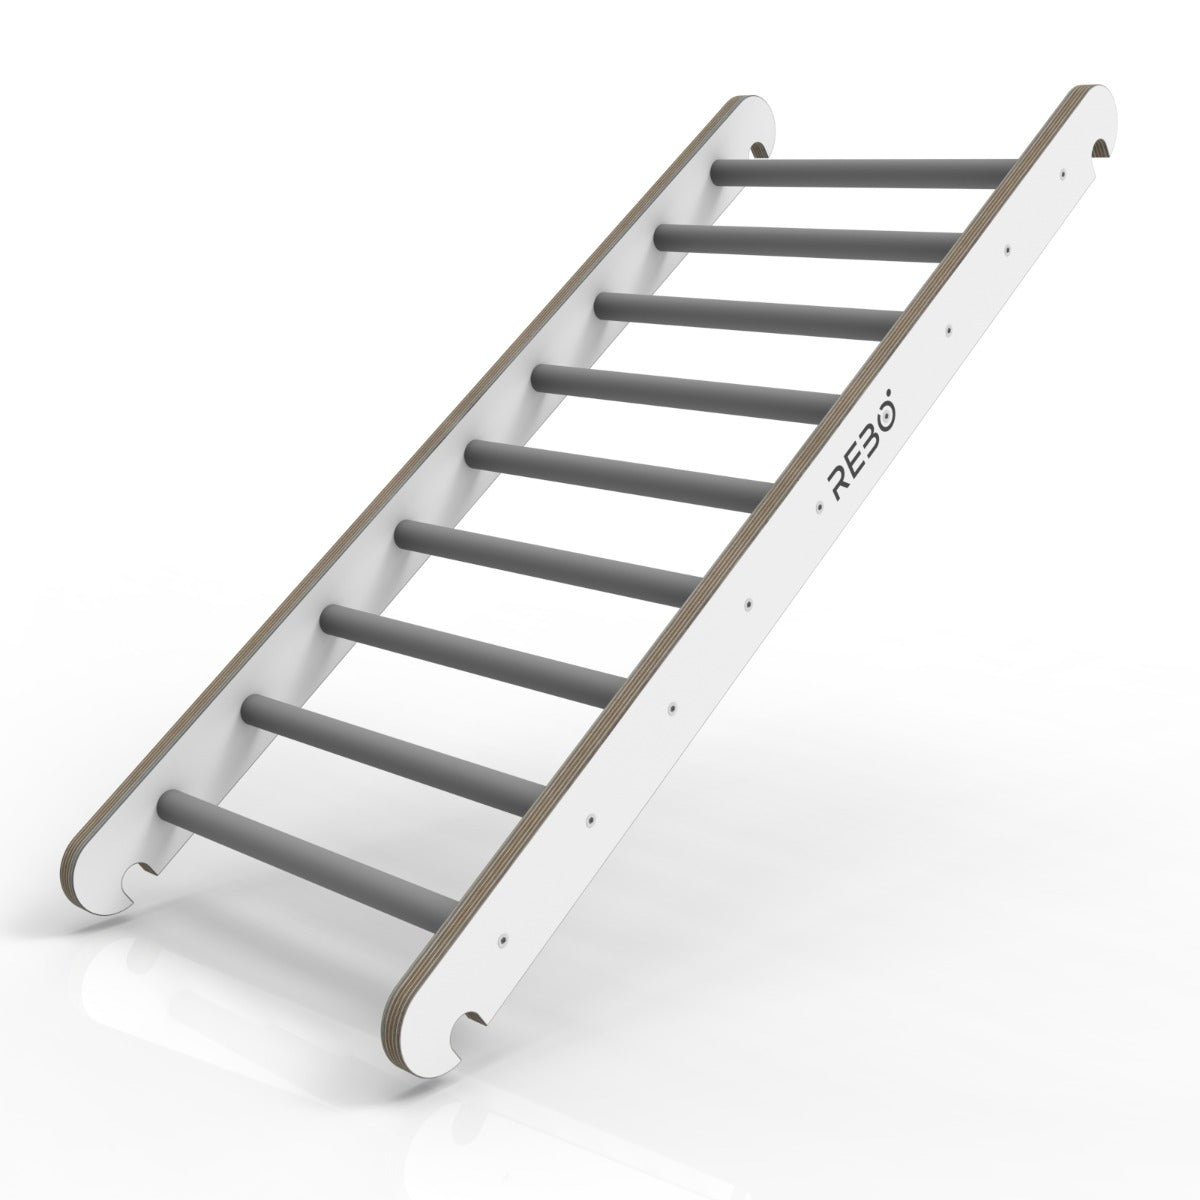 Rebo Montessori Pikler Style Climbing Ladder